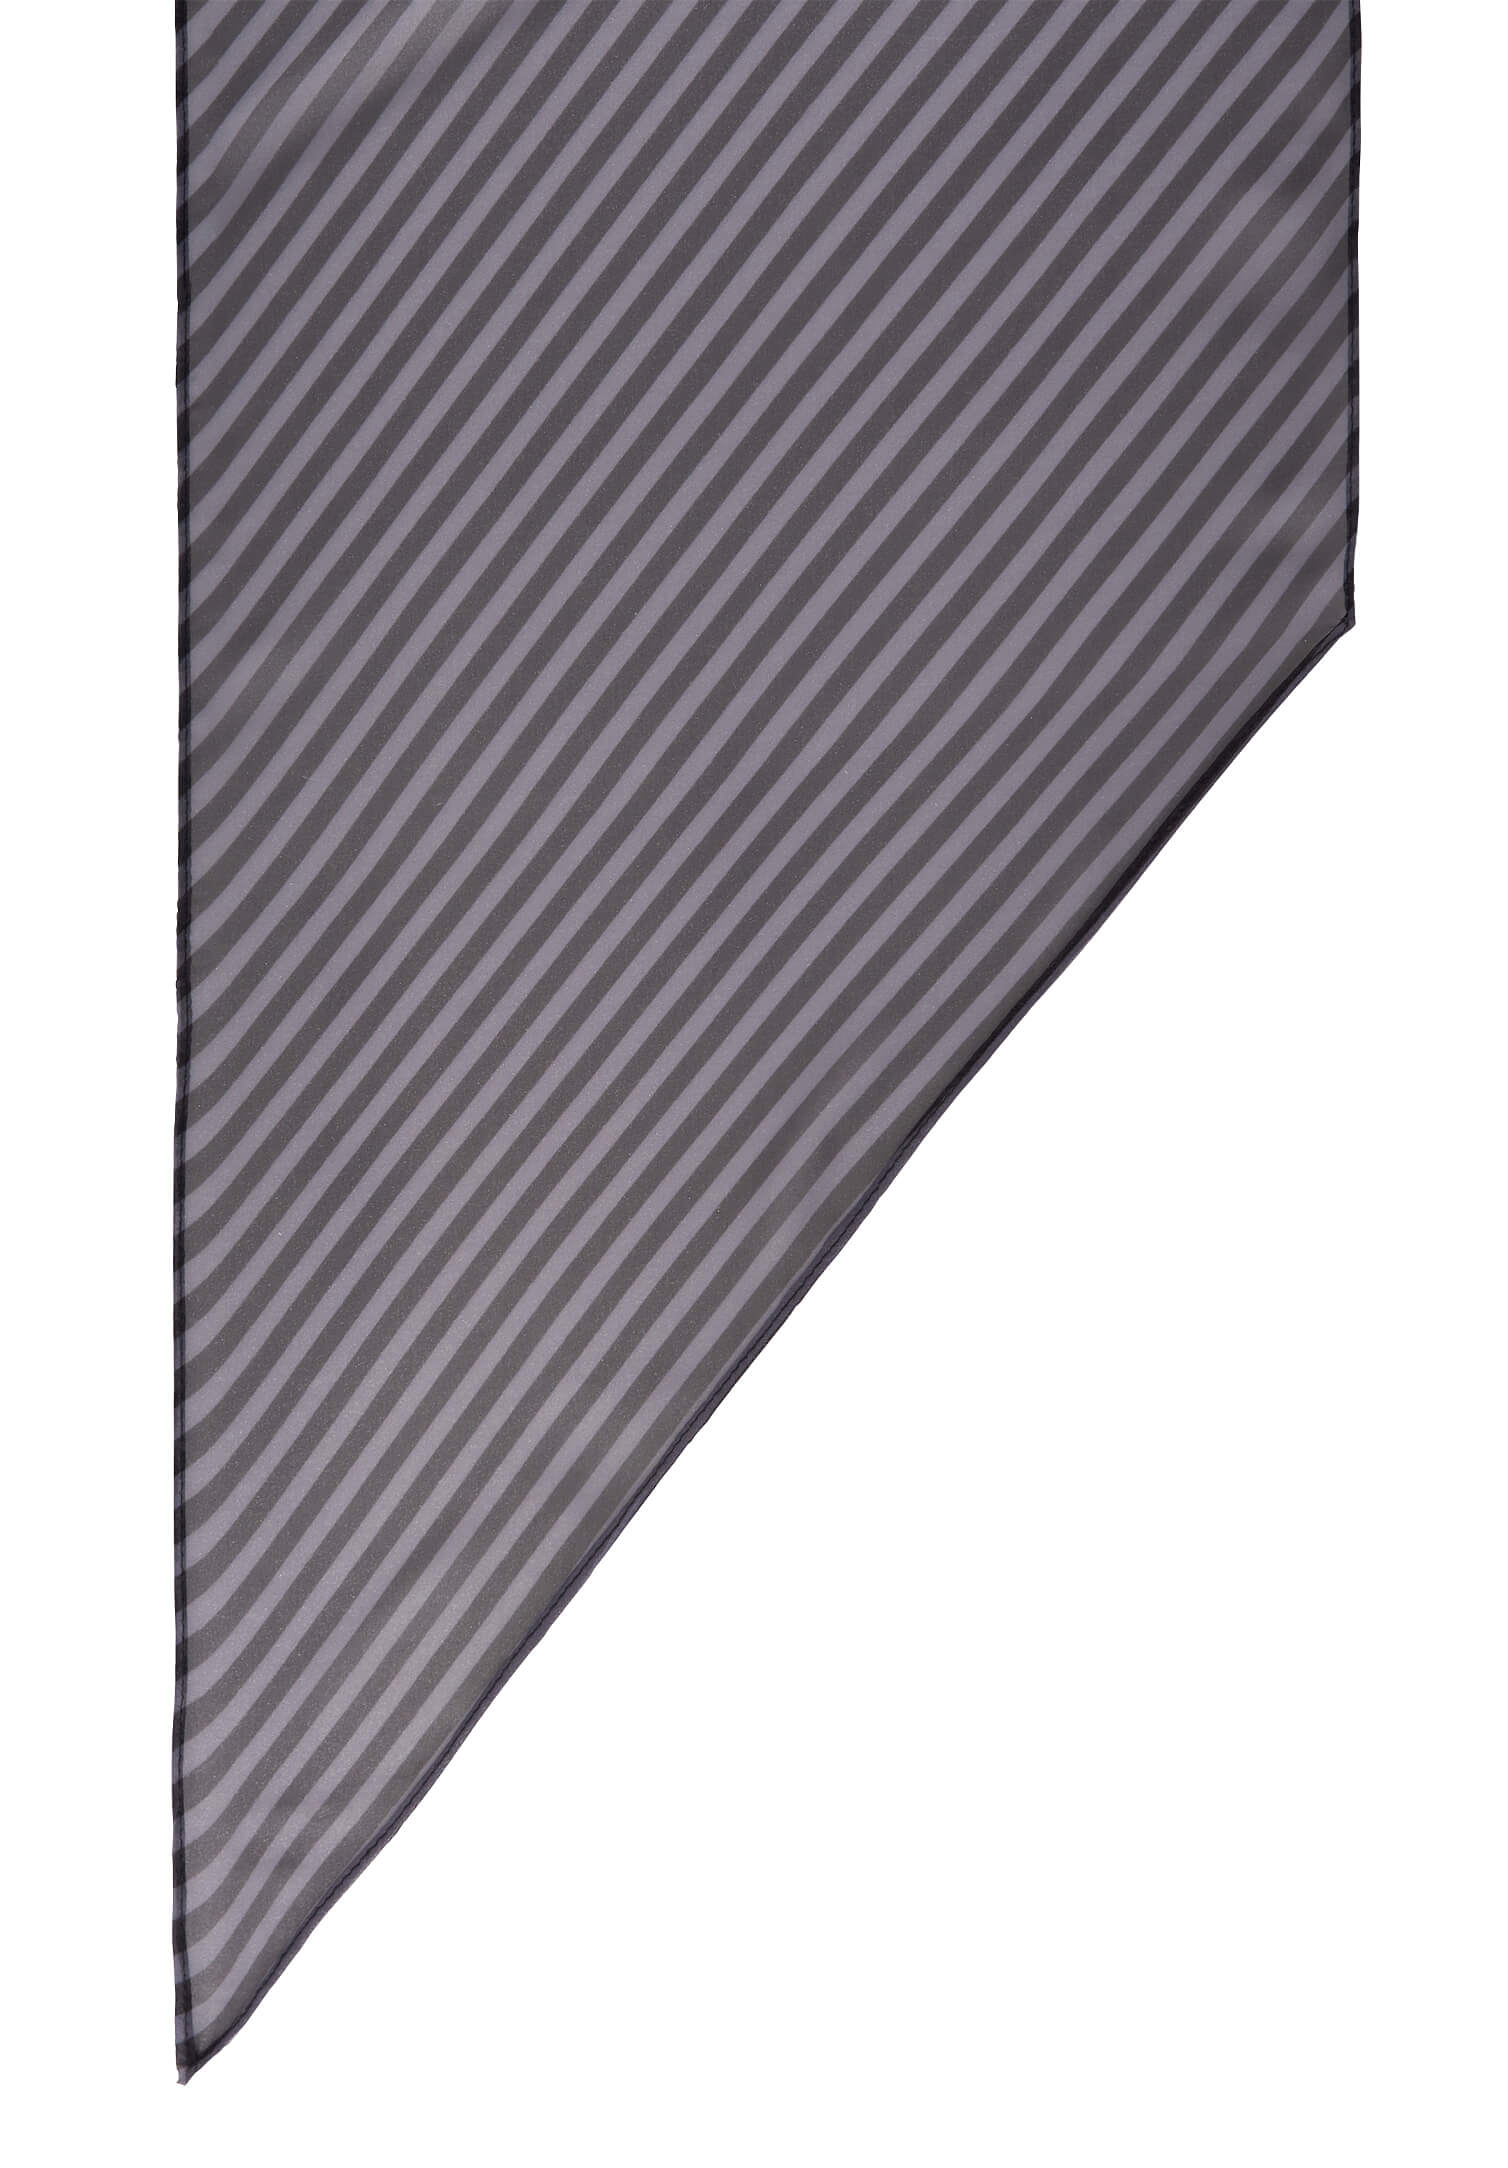 Tuch grau/hellgrau gestreift 140 x 30 cm